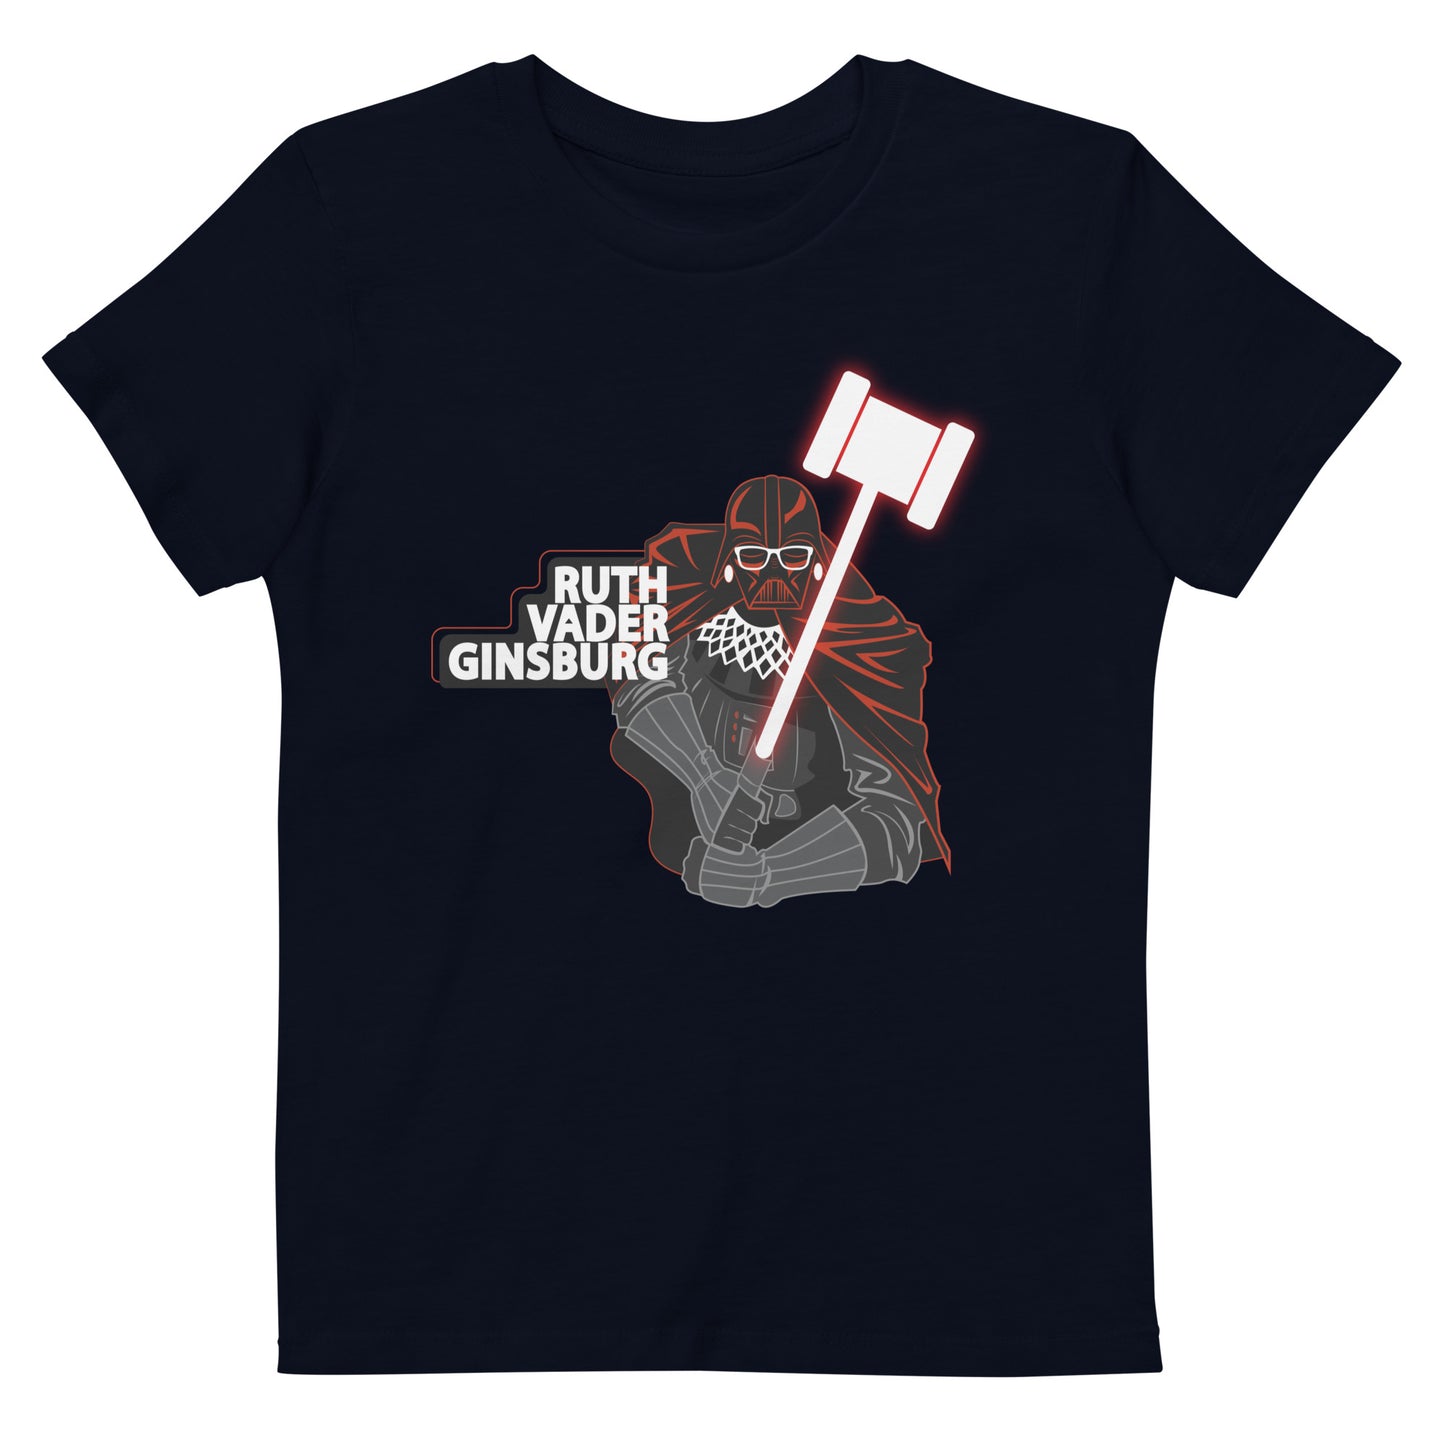 Ruth "Vader" Ginsburg kids t-shirt